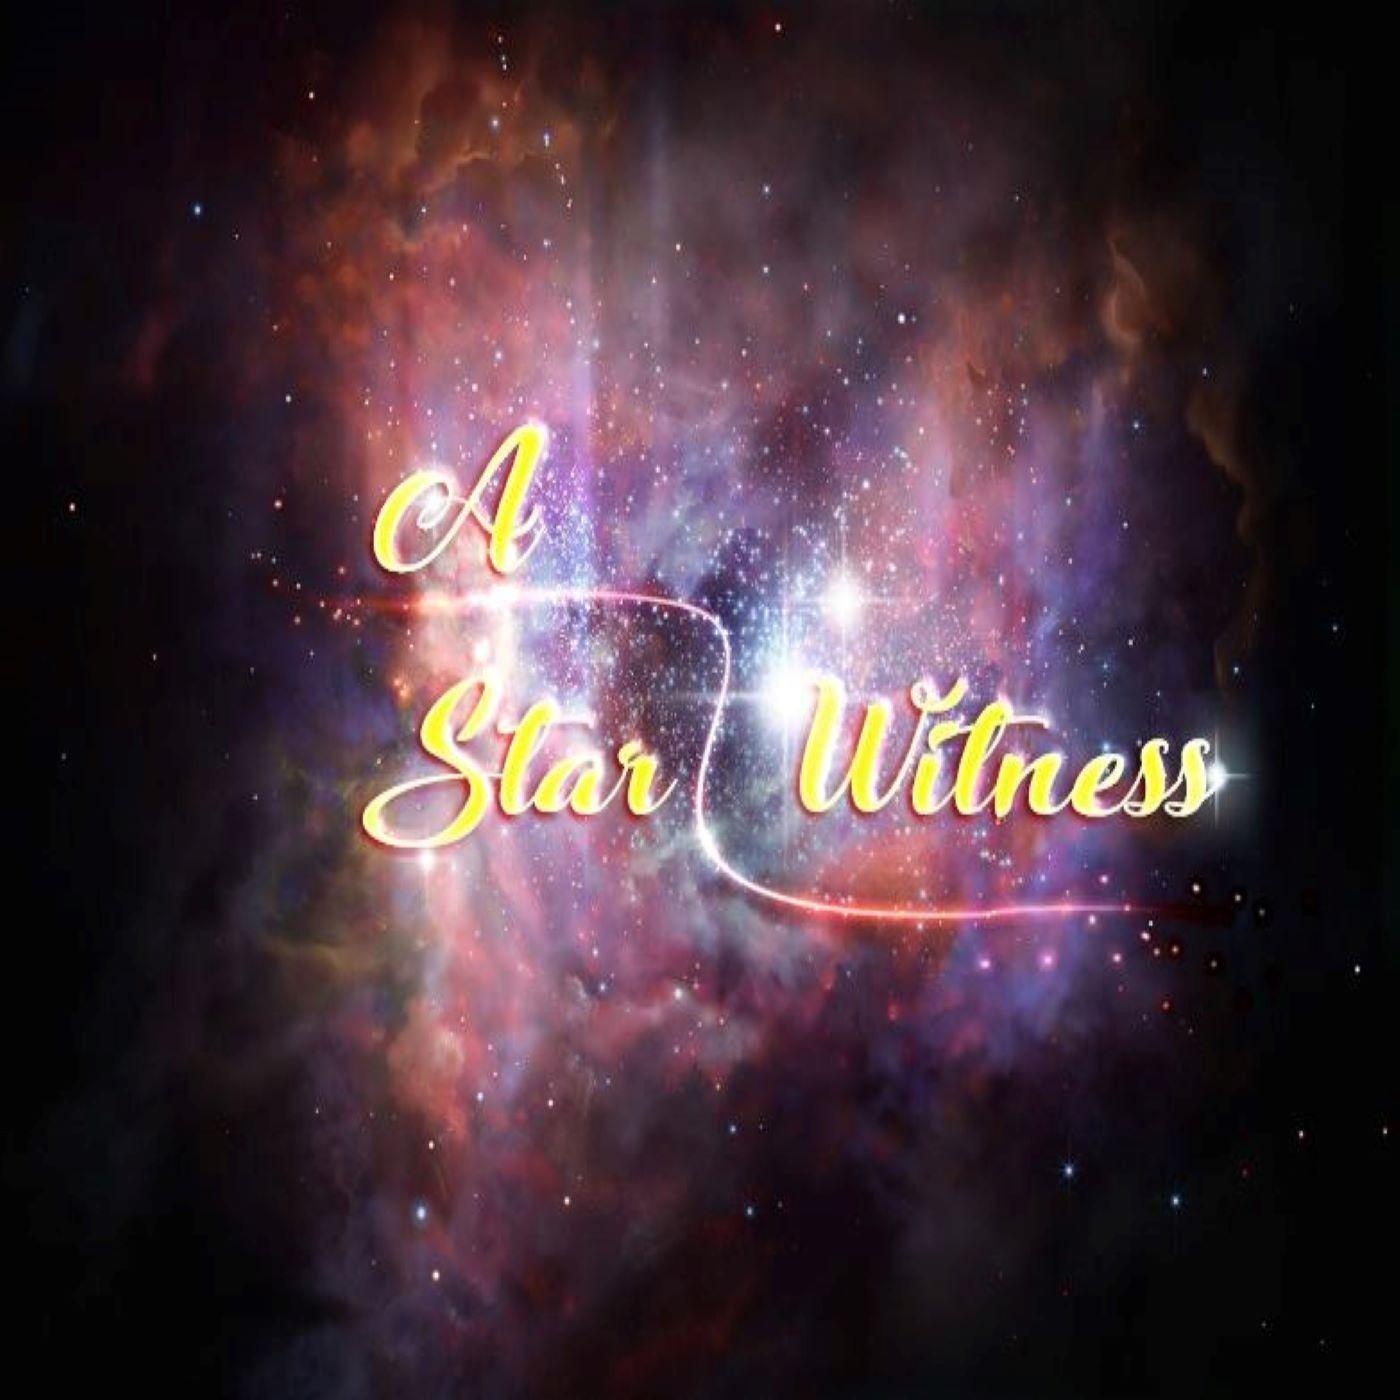 A Star Witness